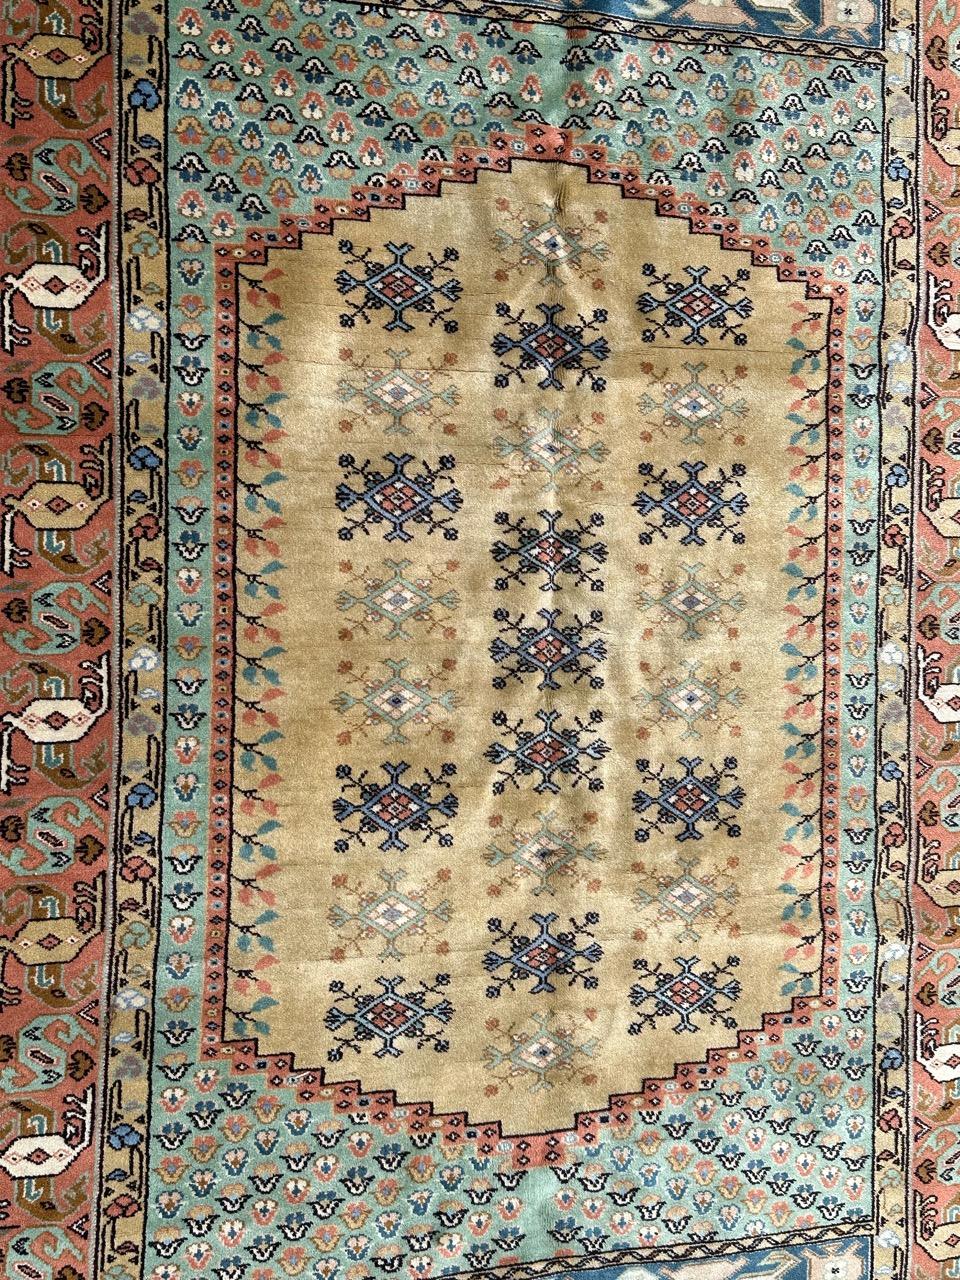 Schöner türkischer Vintage-Teppich mit schönem geometrischem Muster und schönen Farben mit Gelb, Grün, Orange, Blau und Grau. Vollständig handgeknüpft mit Wolle auf Baumwollbasis 

✨✨✨
